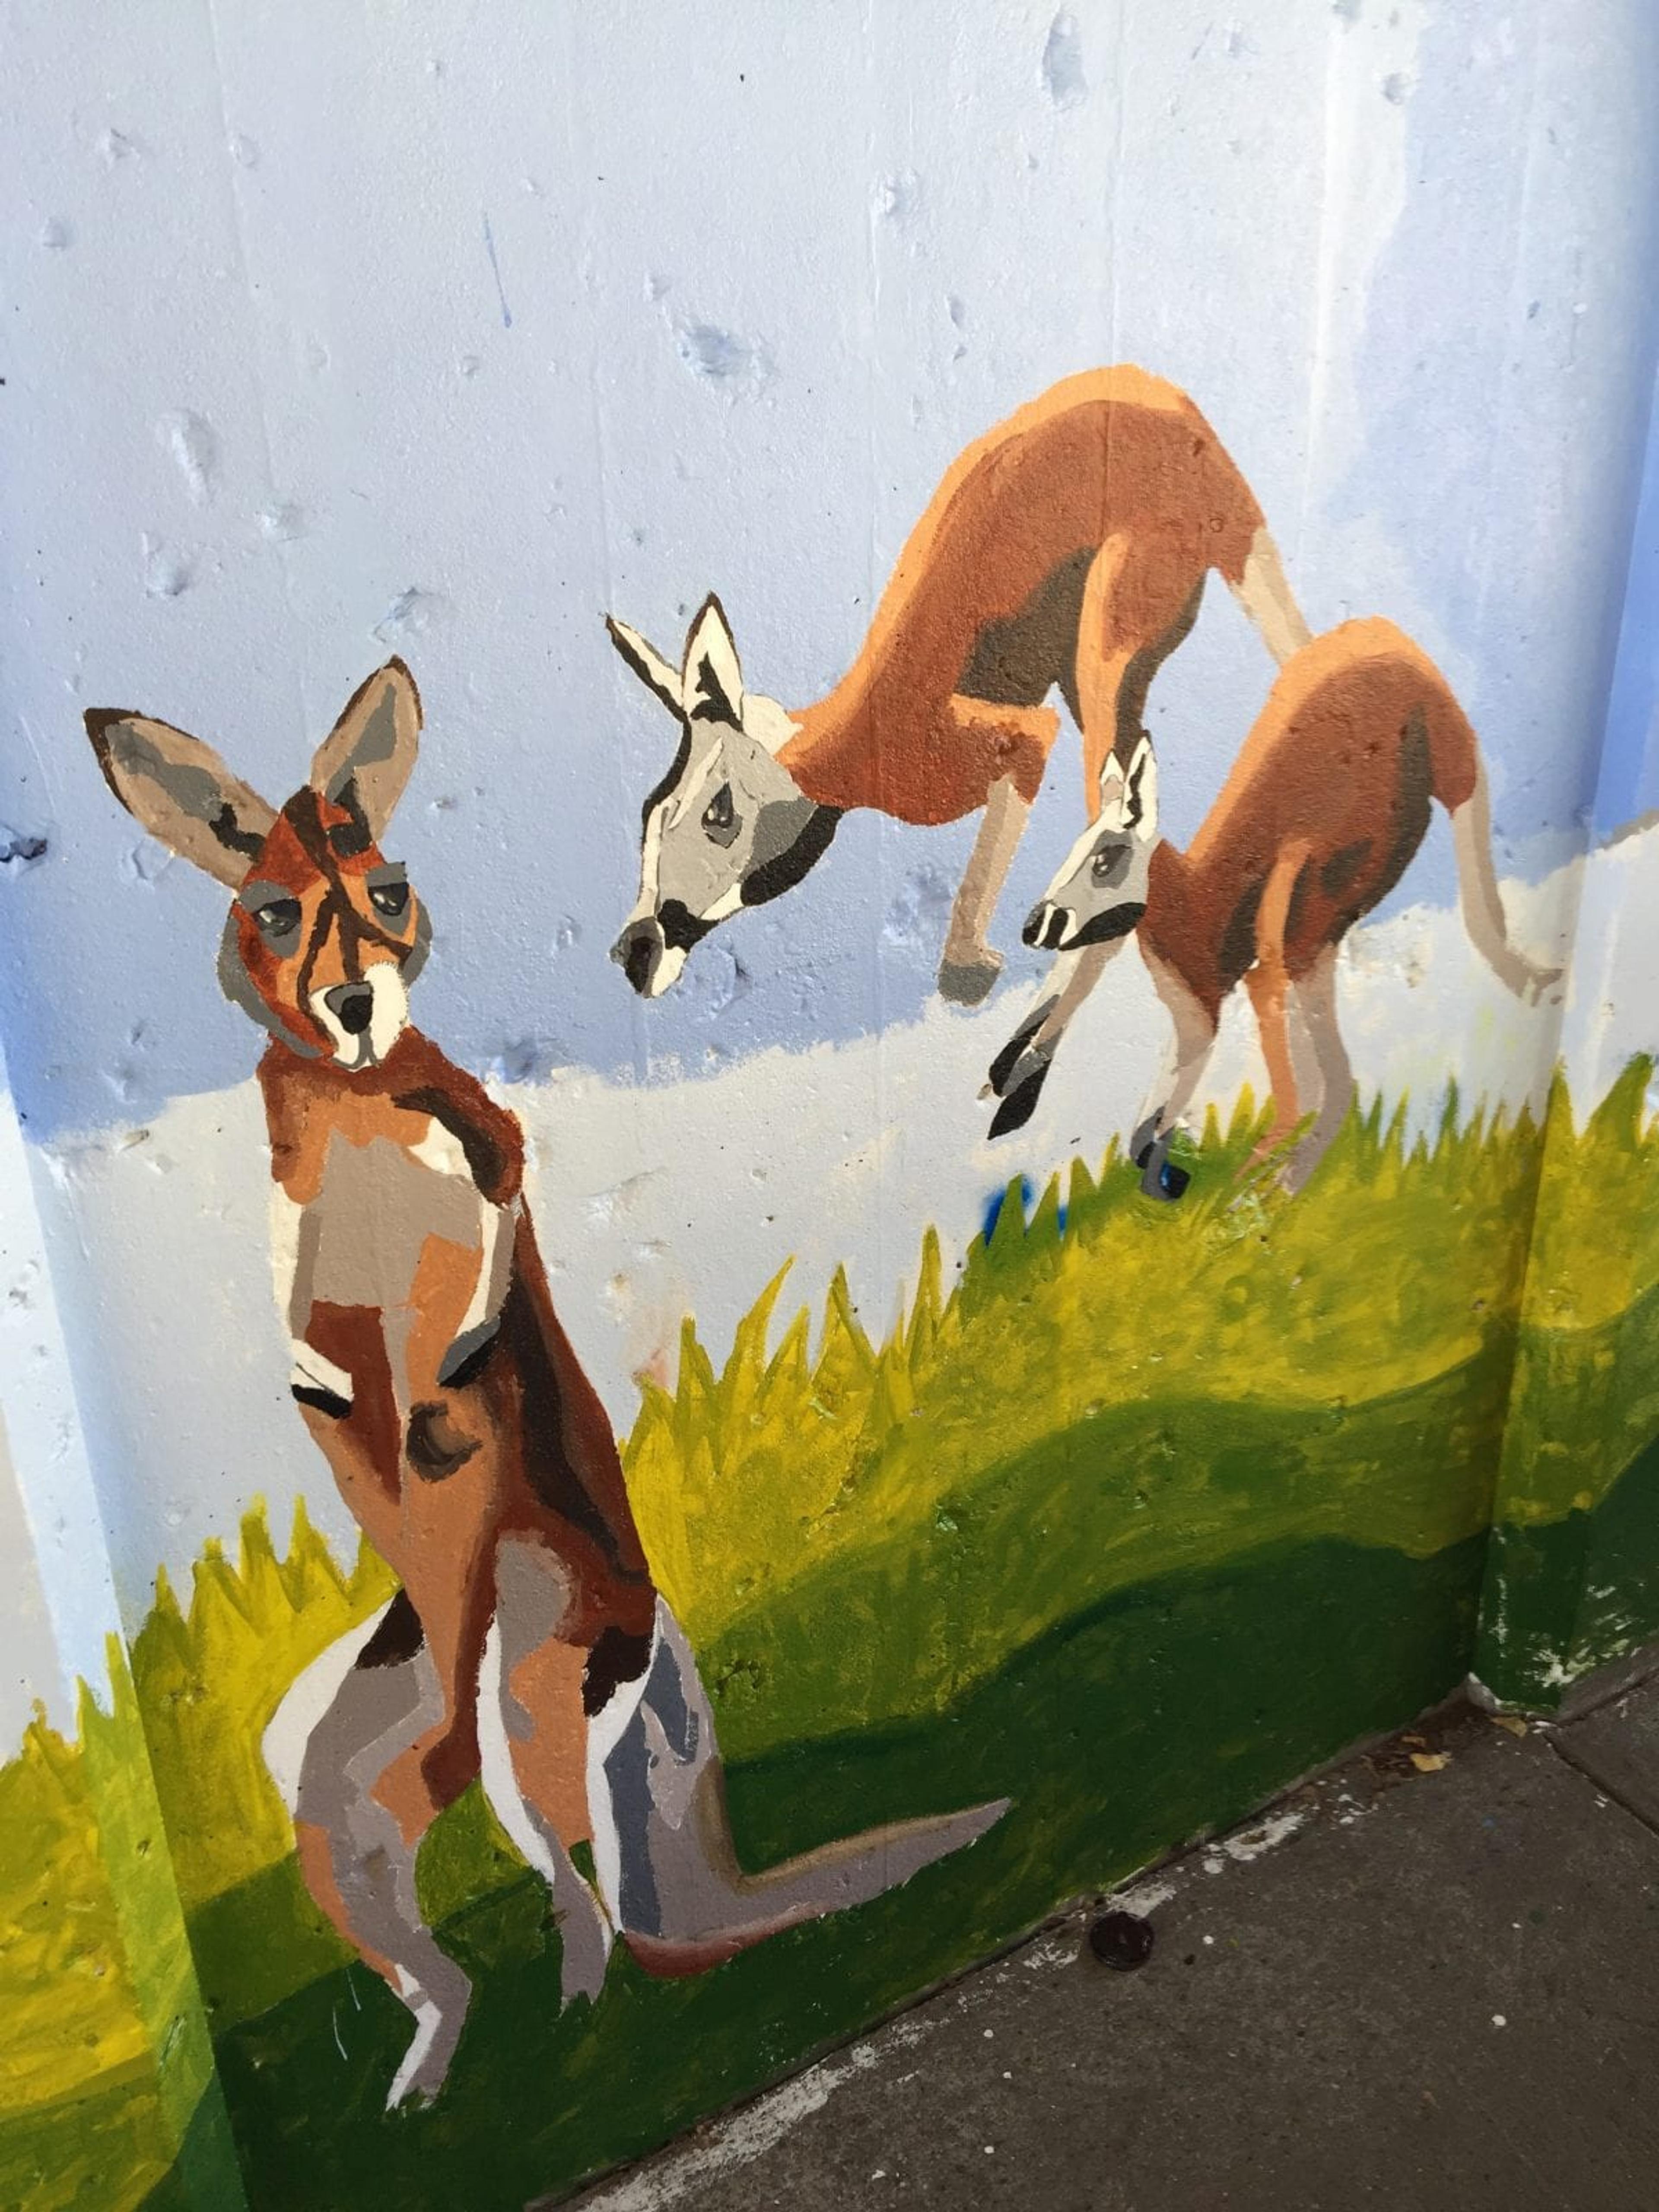 A painted mural of kangaroos